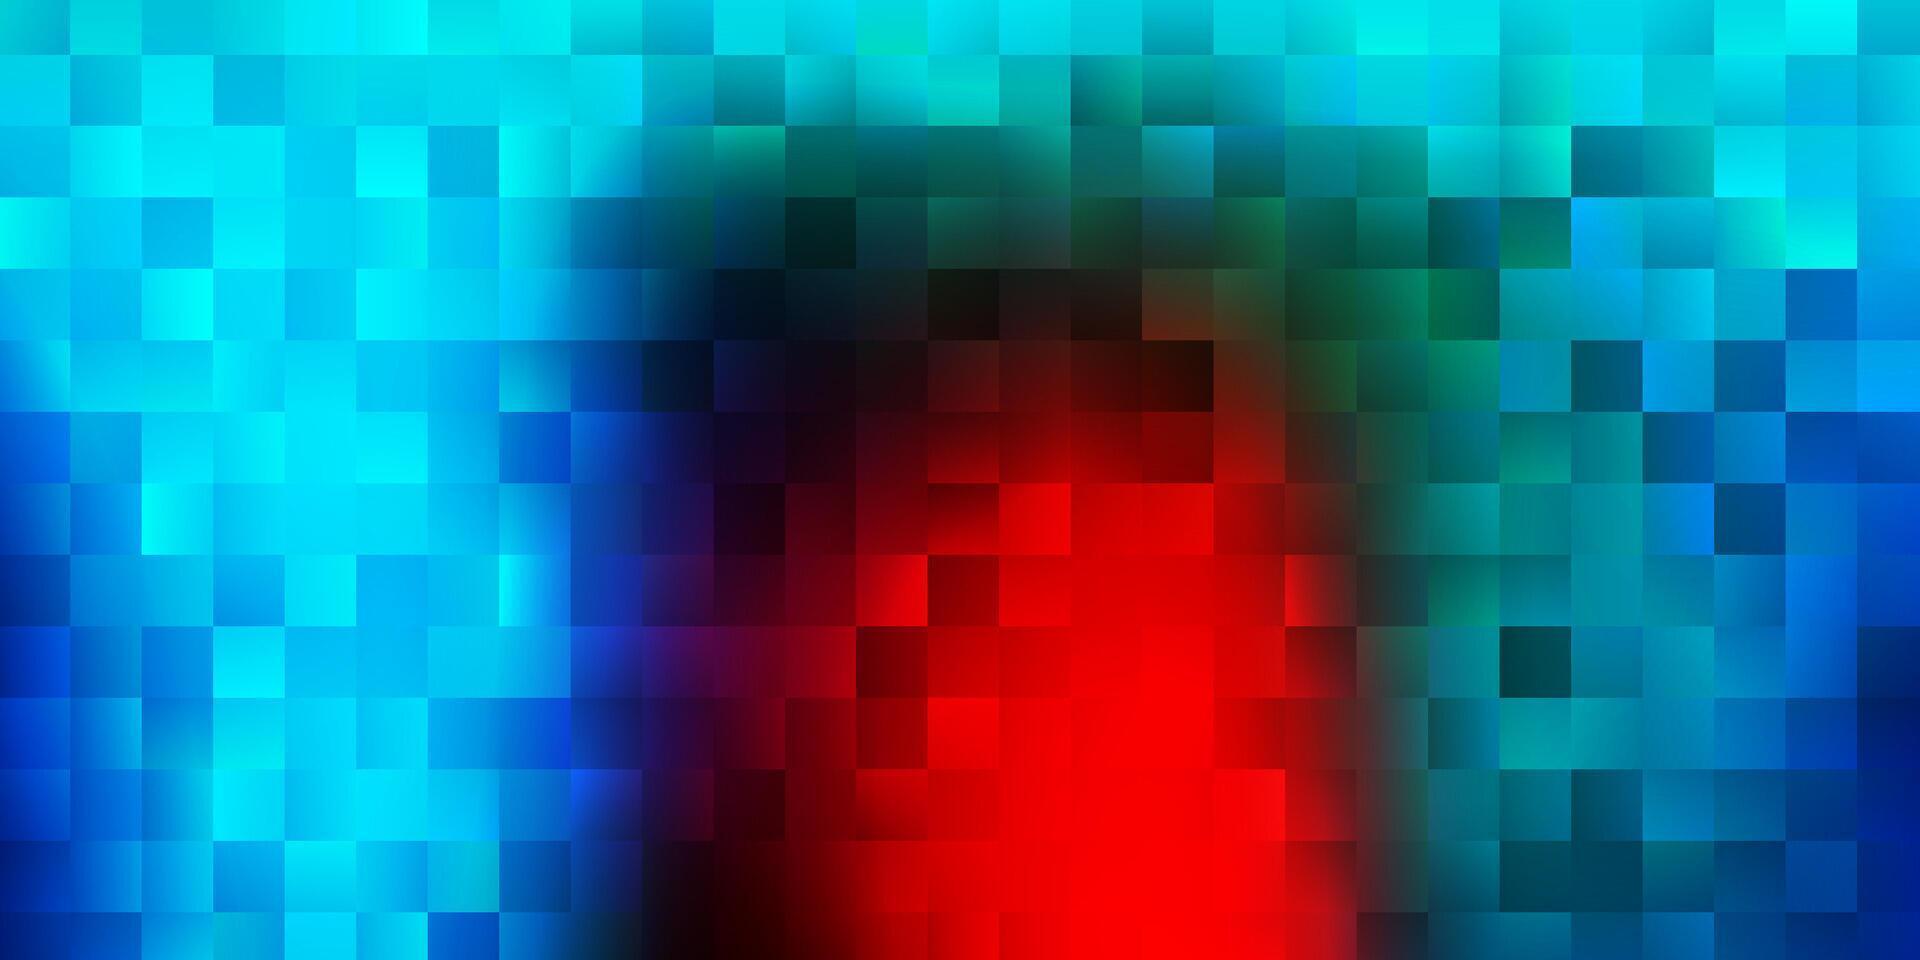 patrón de vector azul claro, rojo con rectángulos.